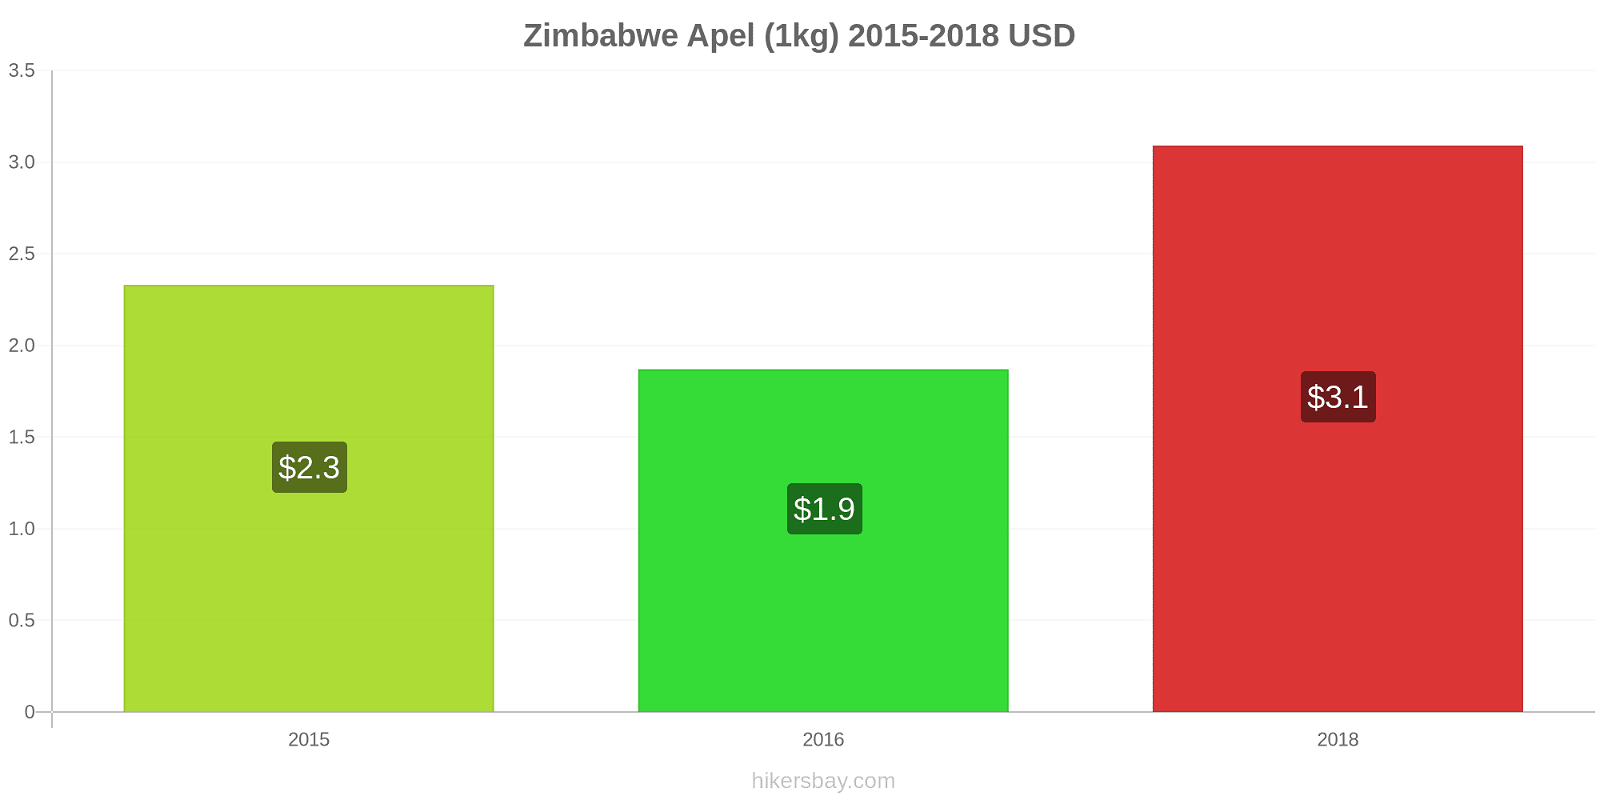 Zimbabwe perubahan harga Apel (1kg) hikersbay.com